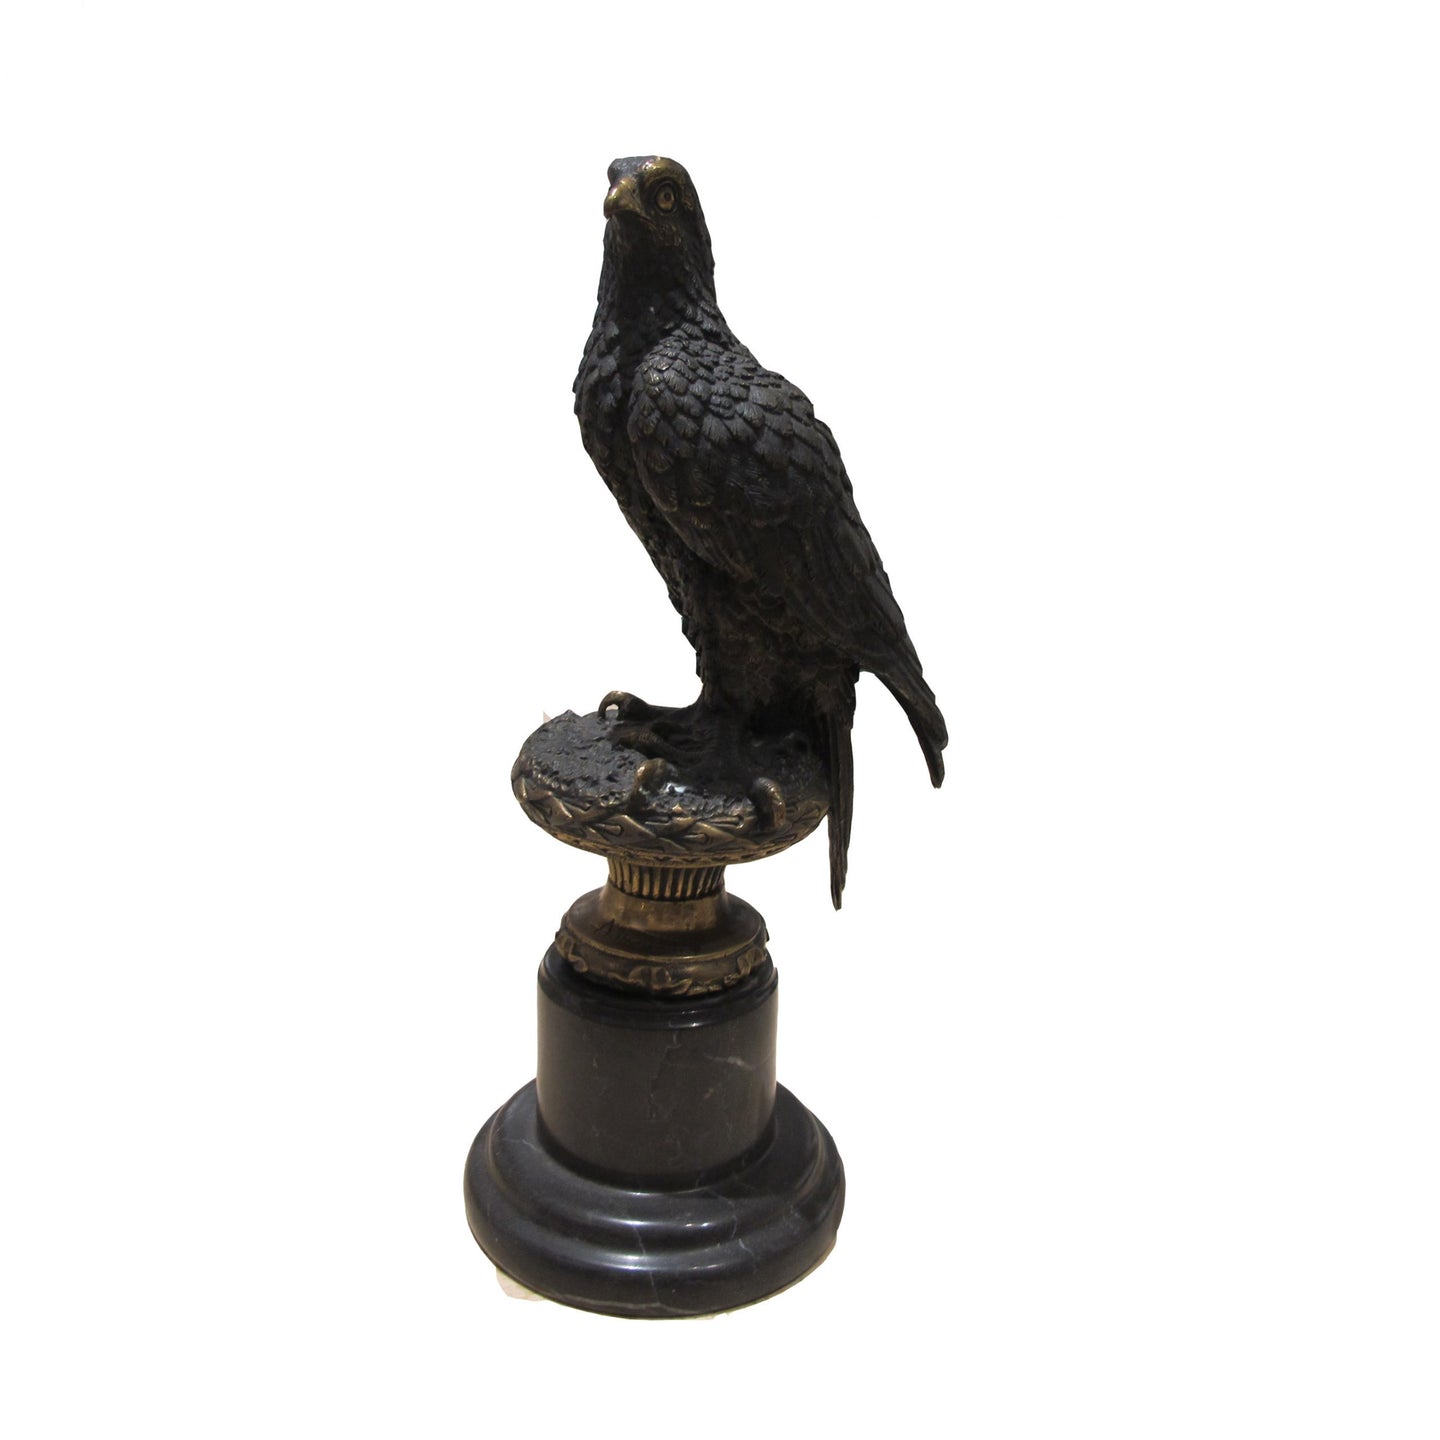 A bronze sculpture of an eagle